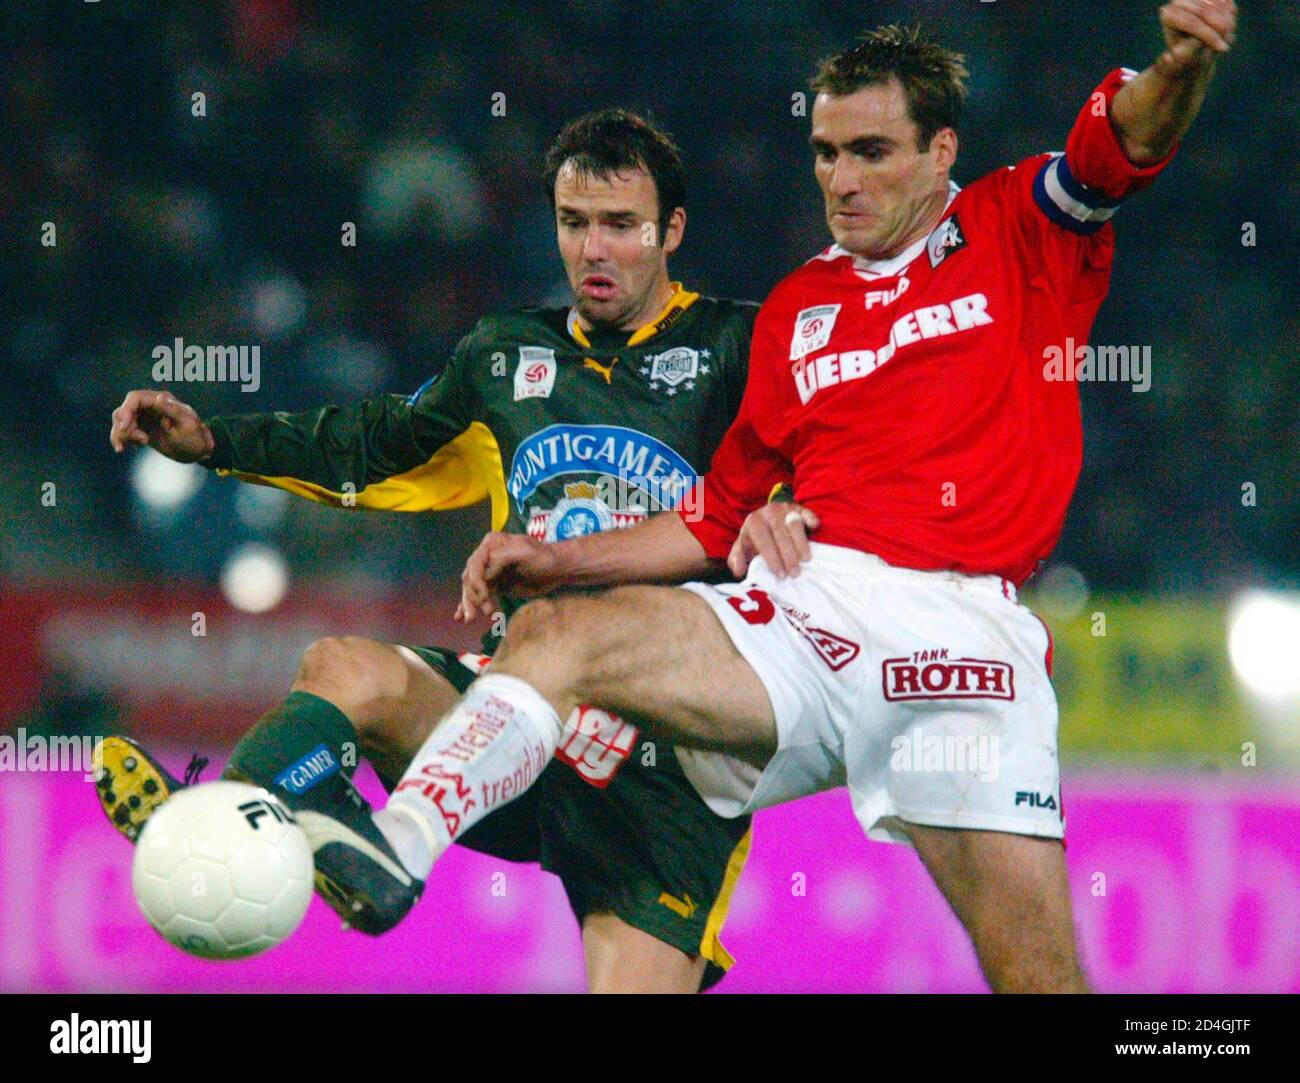 In der Fussball-Bundesliga gewann heute, am 23. November 2003, GAK gegen  Sturm Graz 1:0. Im Bild Mario Haas (L) und Anton Ehmann. REUTERS/Daniel  Raunig REUTERS HPB Stock Photo - Alamy